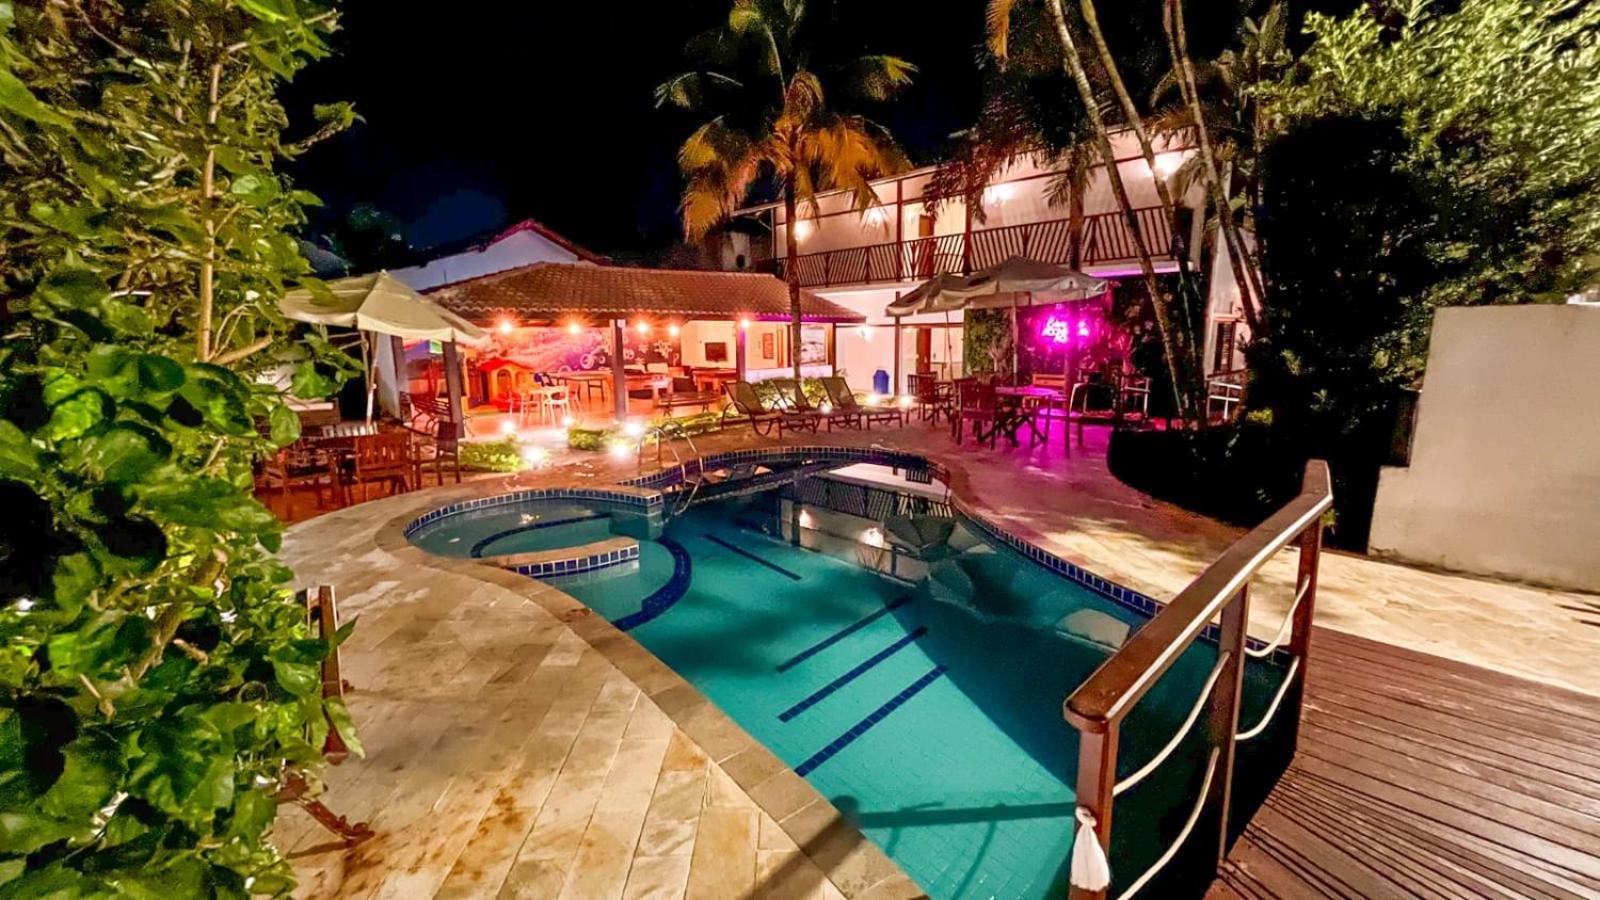 Hotel Ilhas Da Grecia Guaruja Luaran gambar